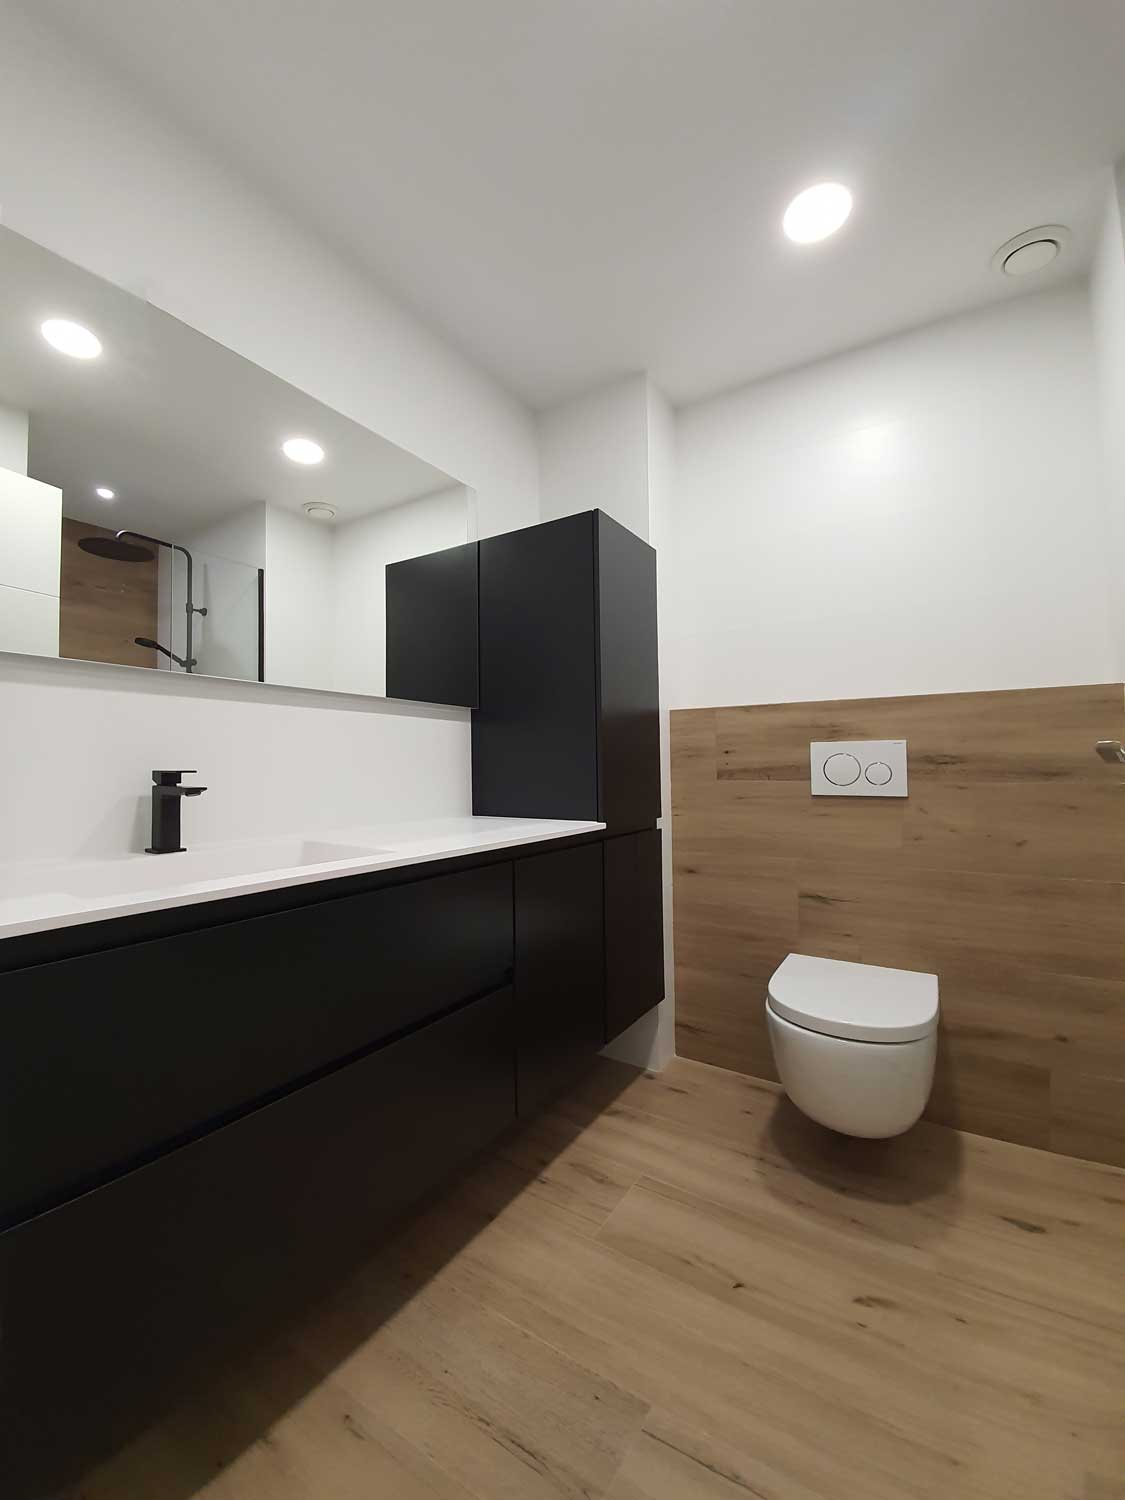 Muebles de baño a medida, imprescindibles para aprovechar el espacio -  Avila Dos